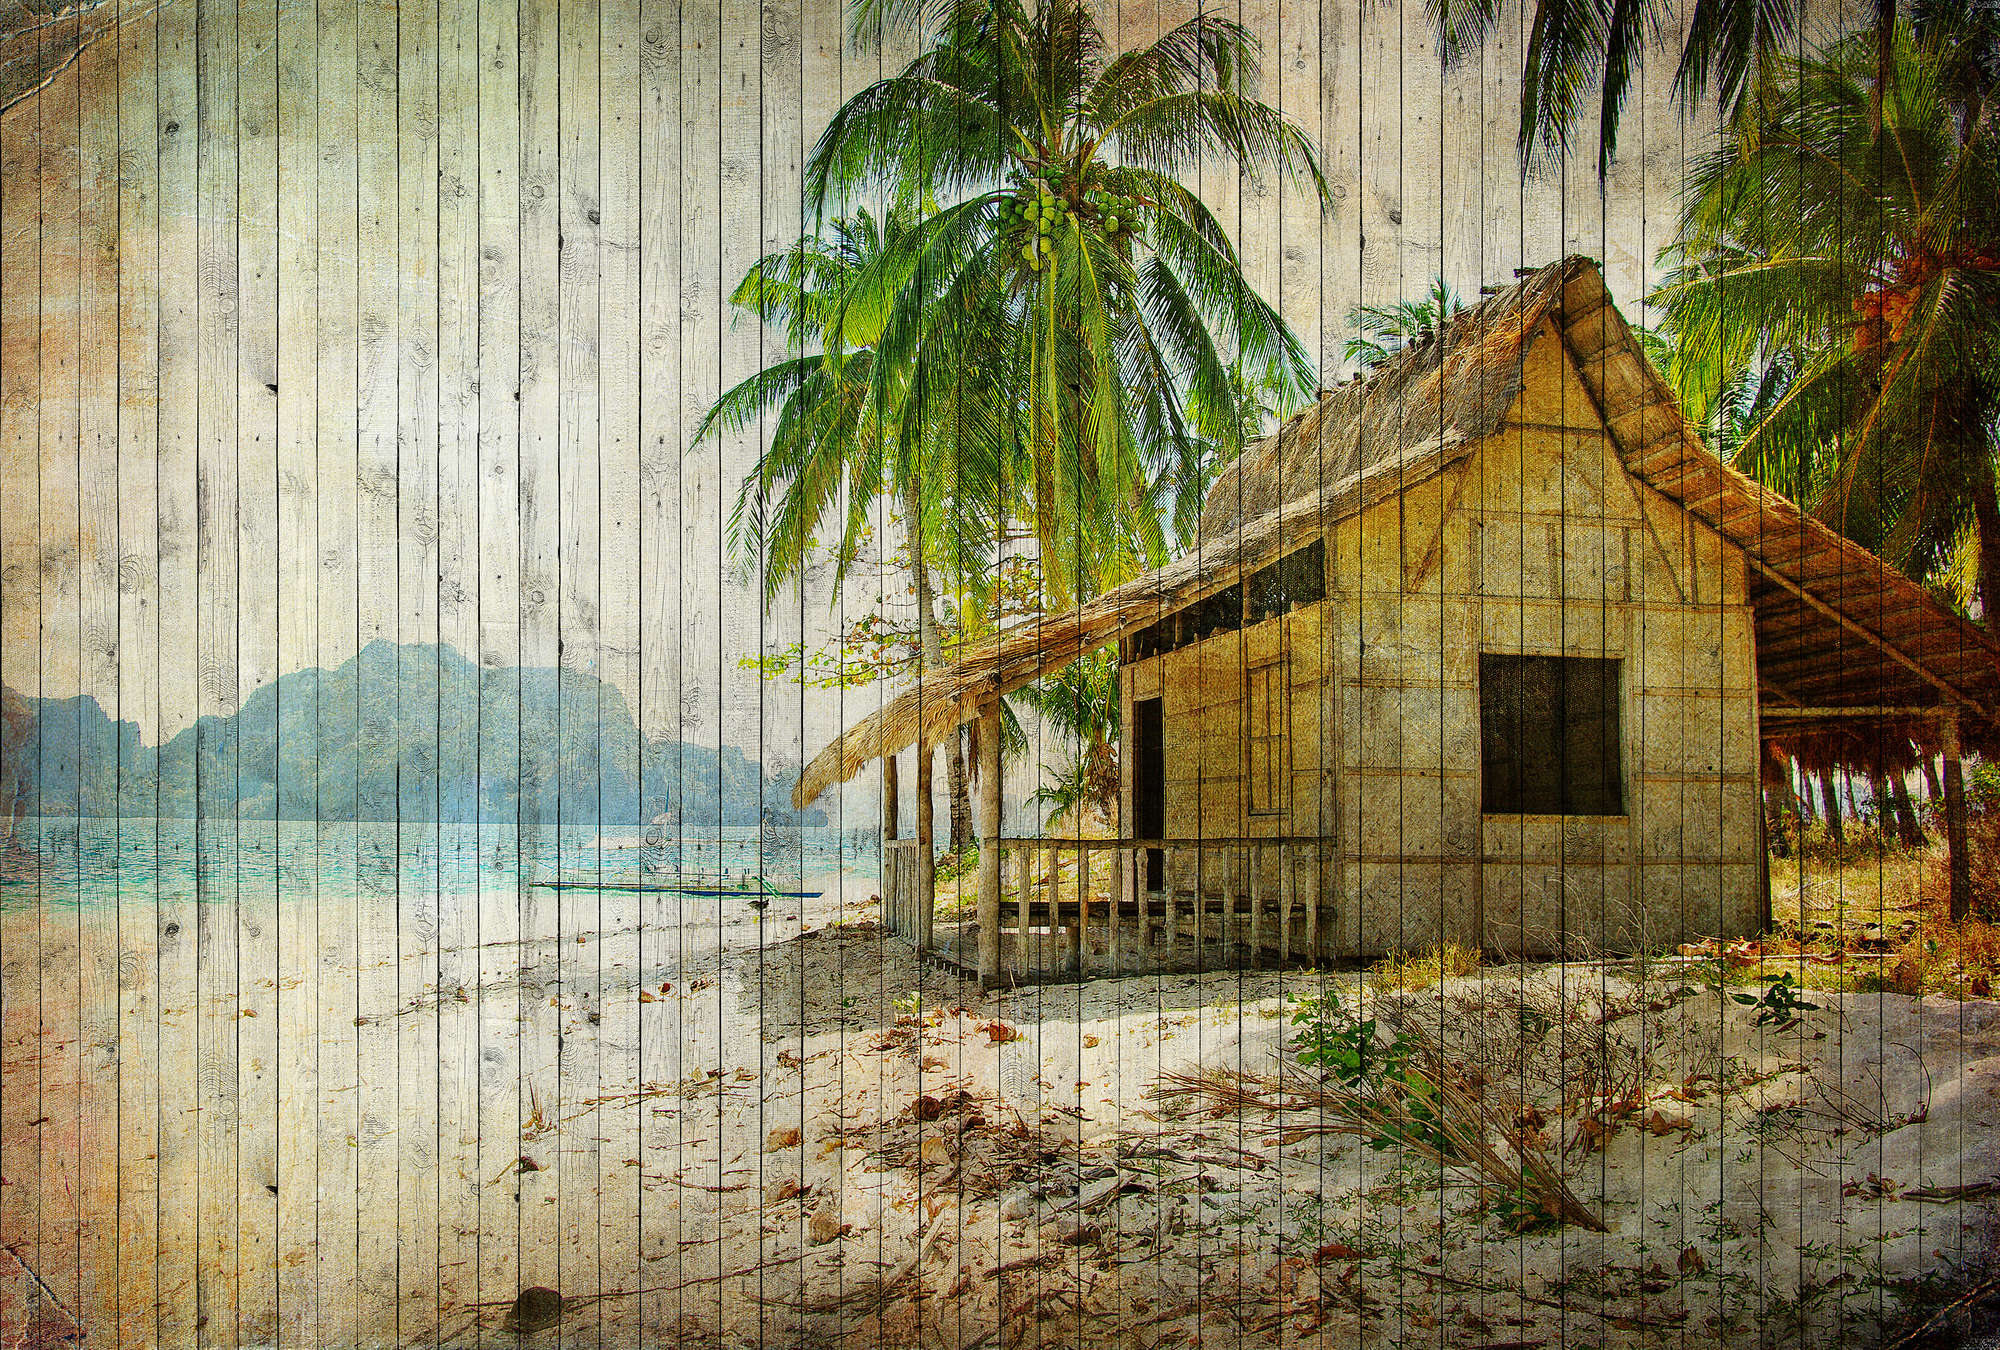             Tahiti 1 - Zuidzee strandbehang met boardoptiek in houten panelen - Beige, Blauw | Premium glad vlies
        